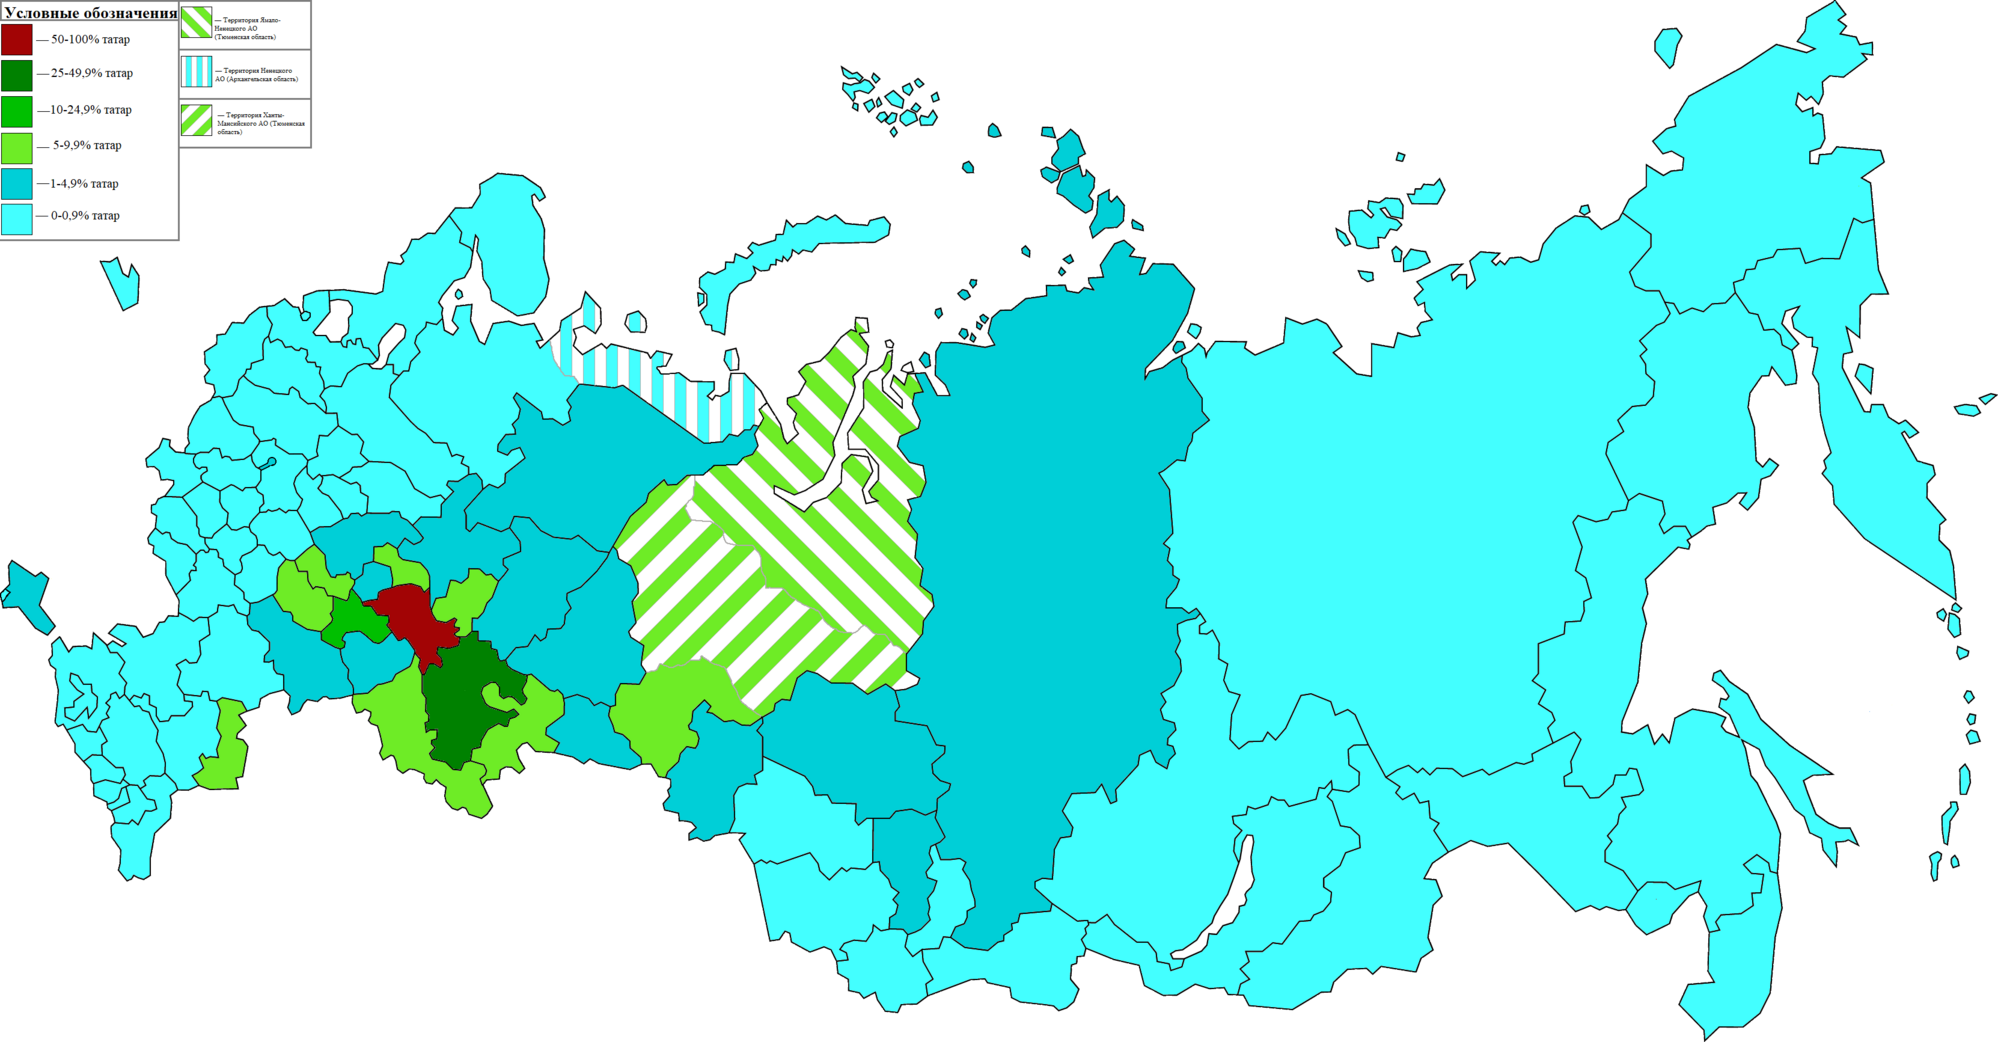 Территория проживания татар